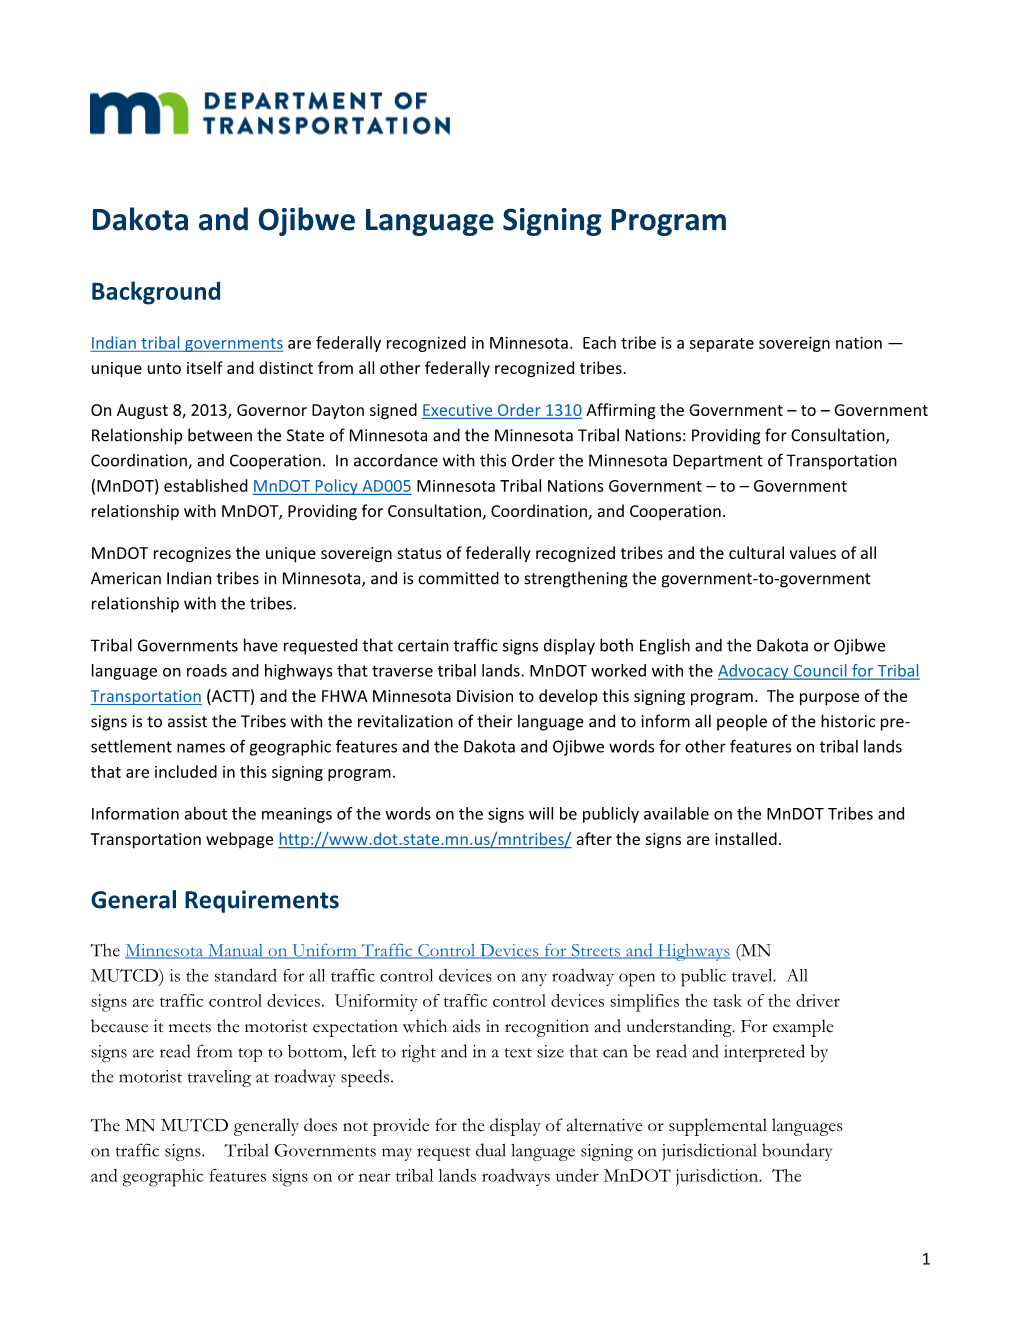 Dakota Or Ojibwe Language Signing Program